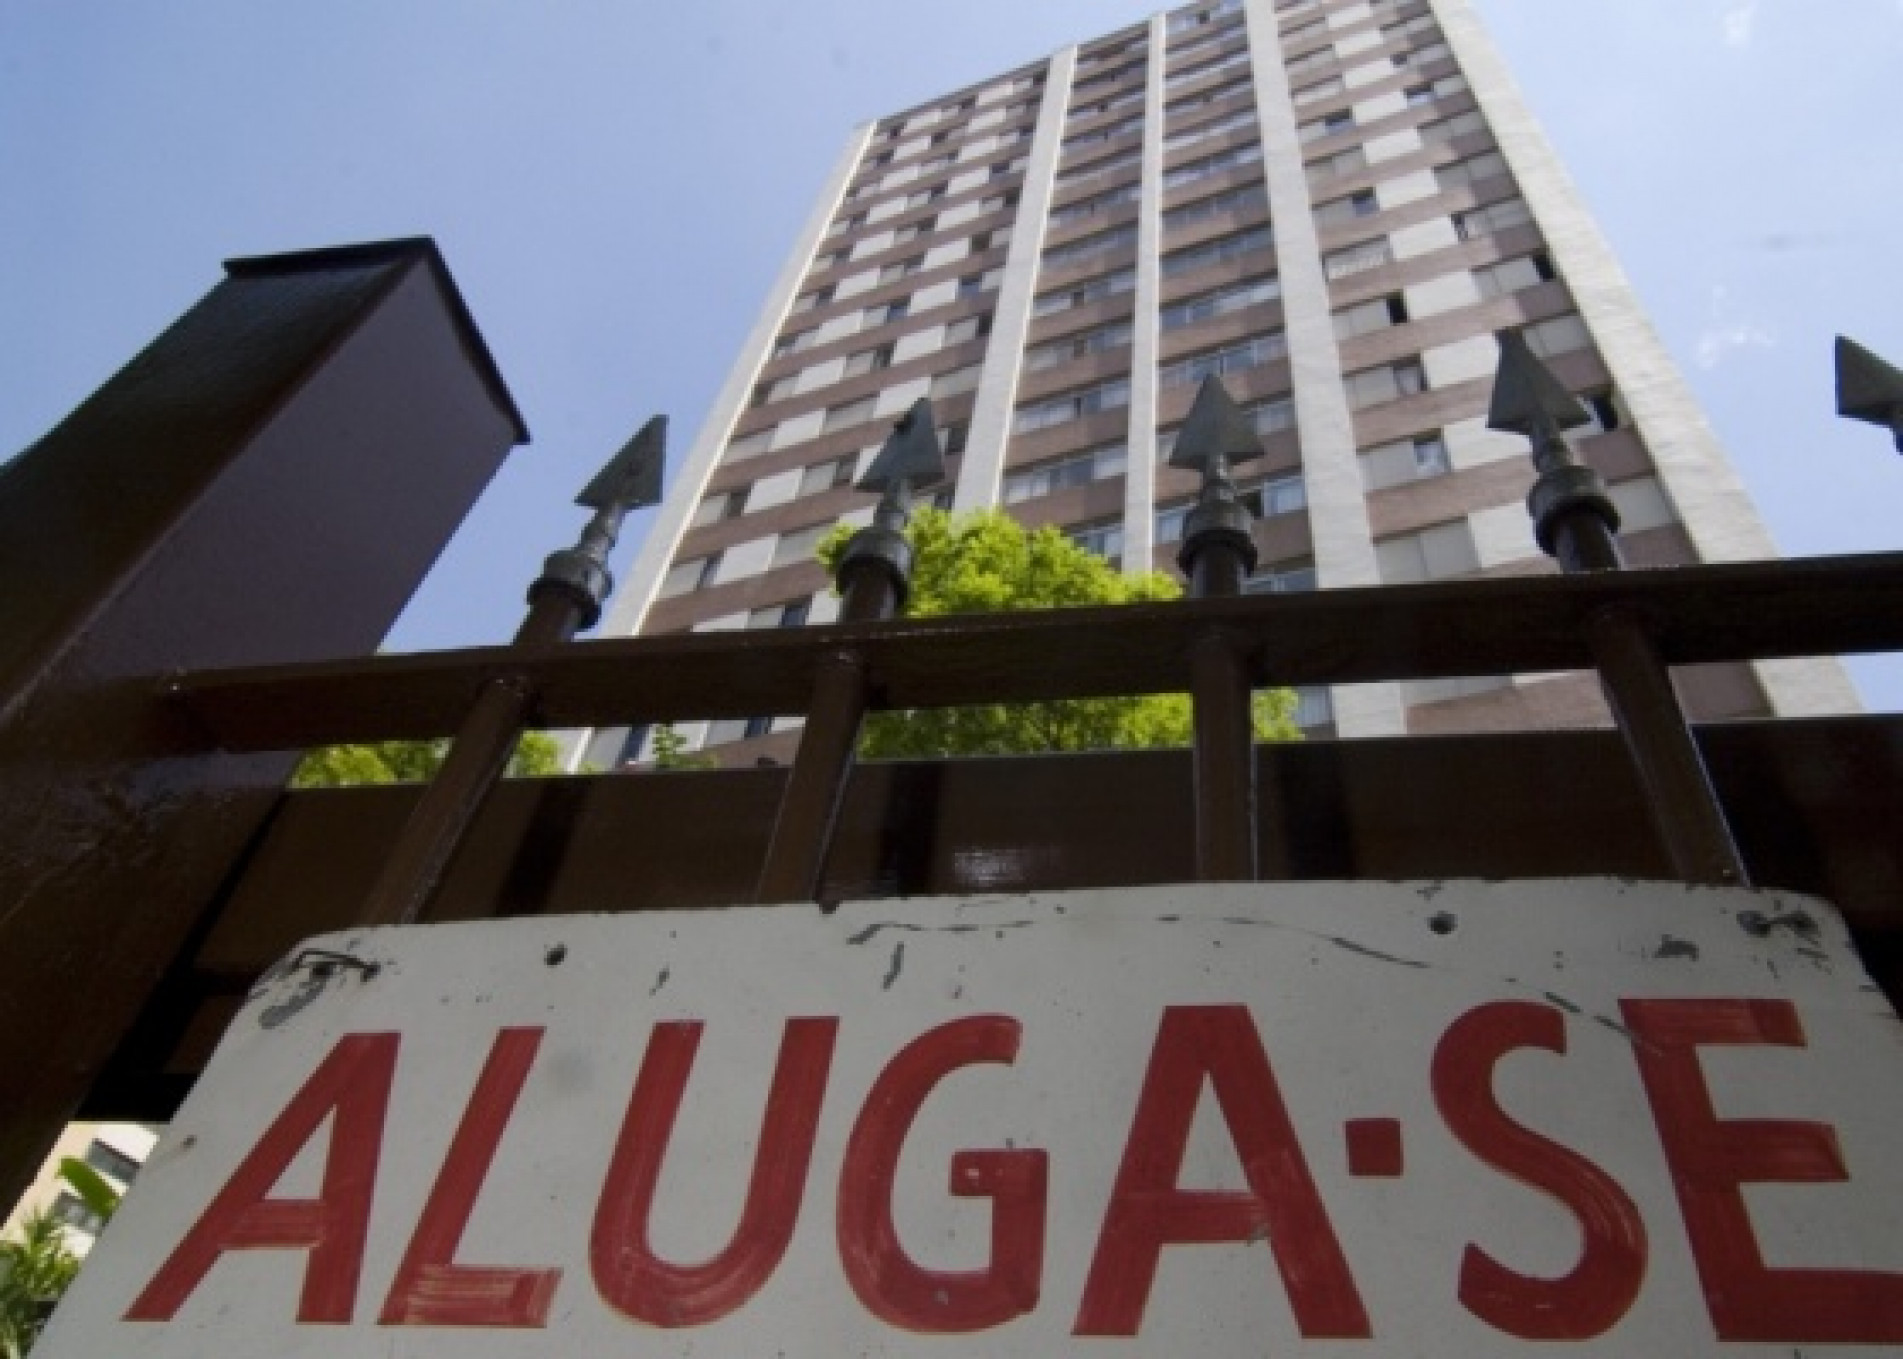 Aluguel residencial sobe 1,05% em julho, após queda de 0,31% em junho, diz FGV